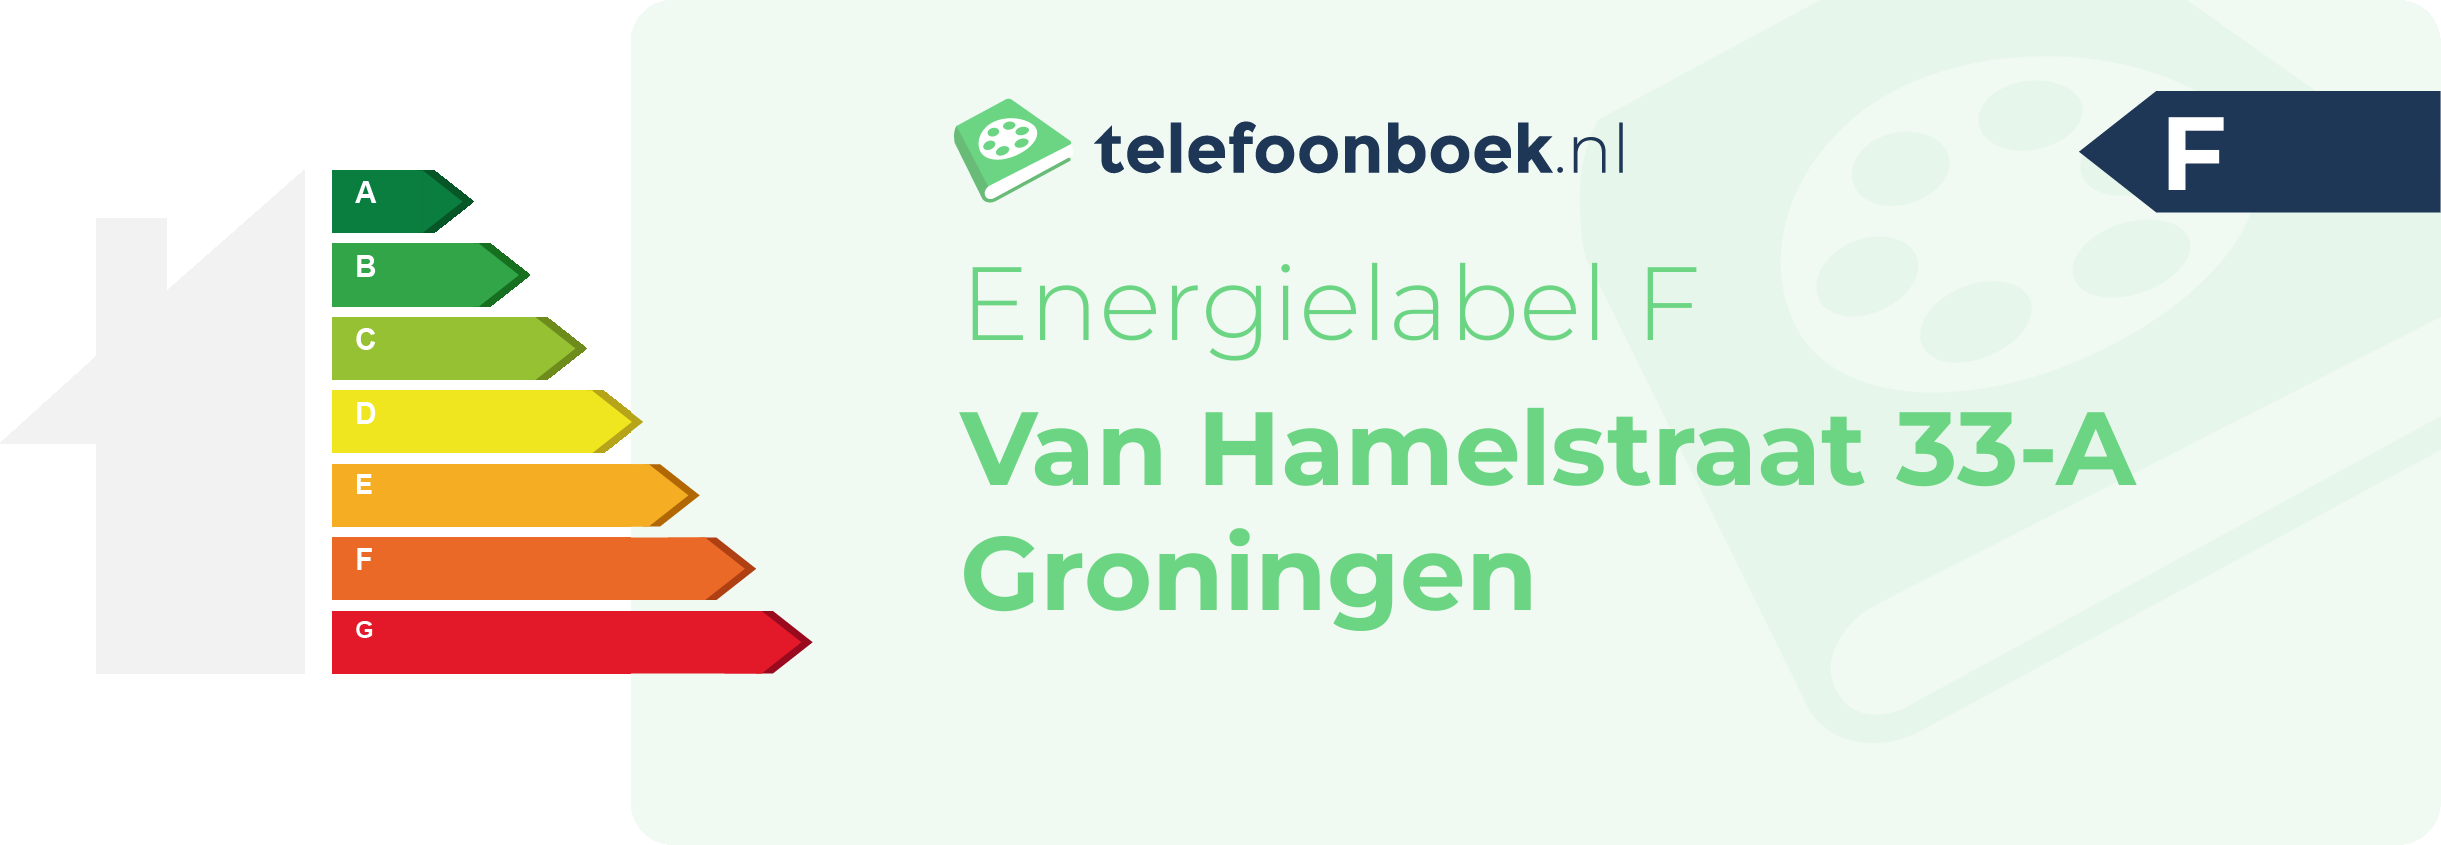 Energielabel Van Hamelstraat 33-A Groningen